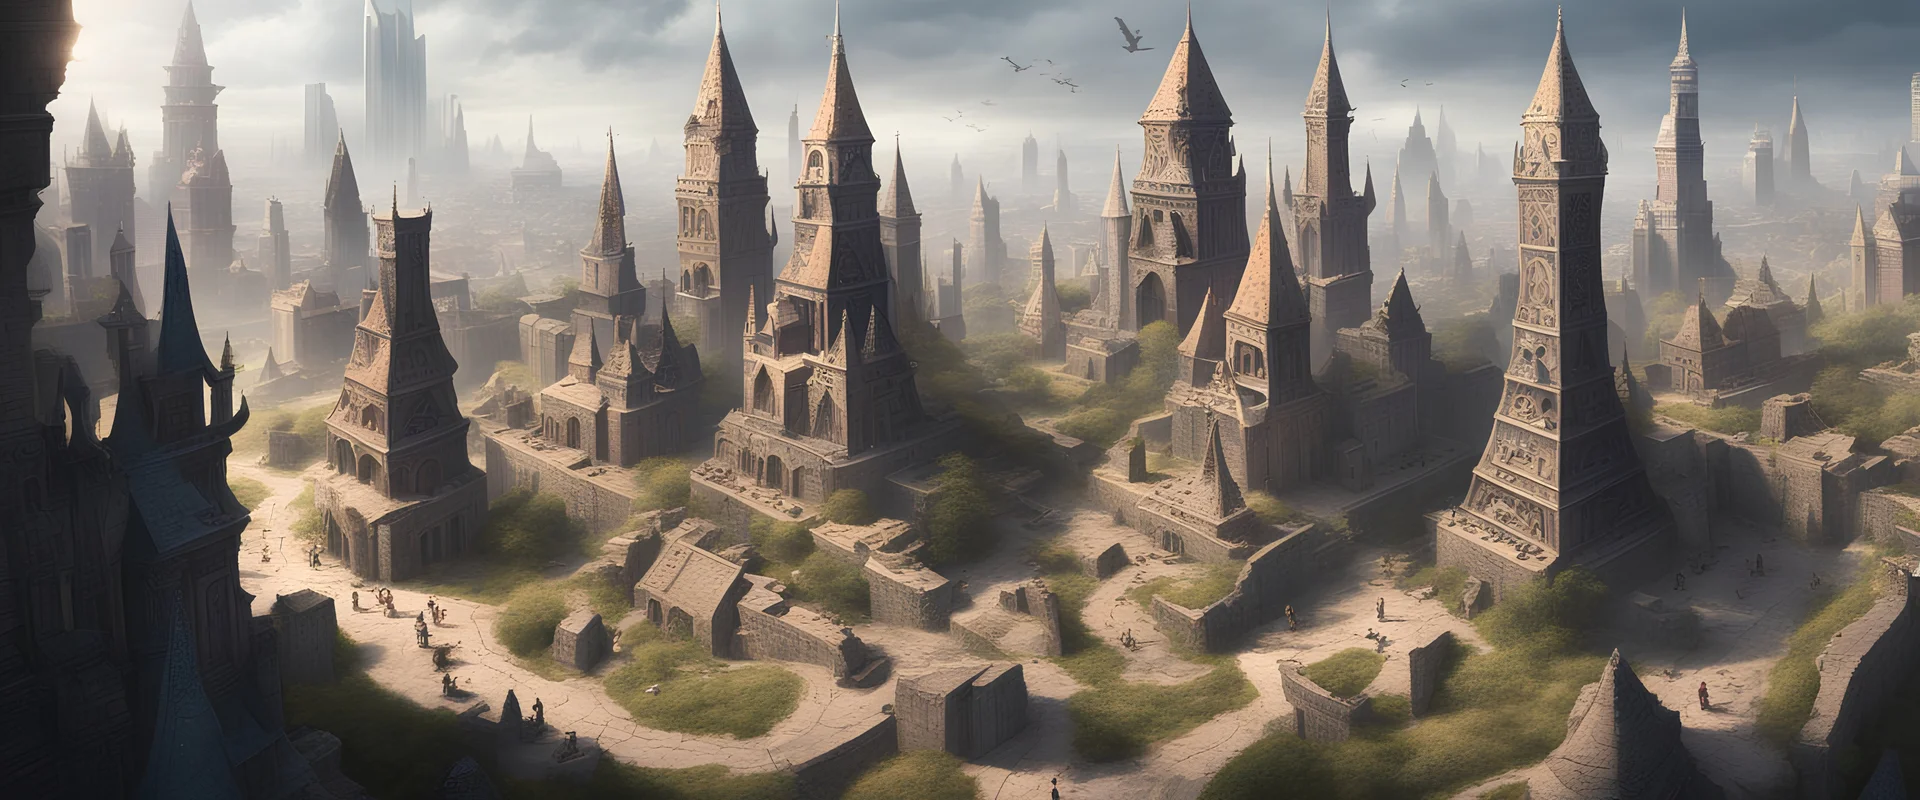 Cidade com varias torres de magia e escritas rúnicas